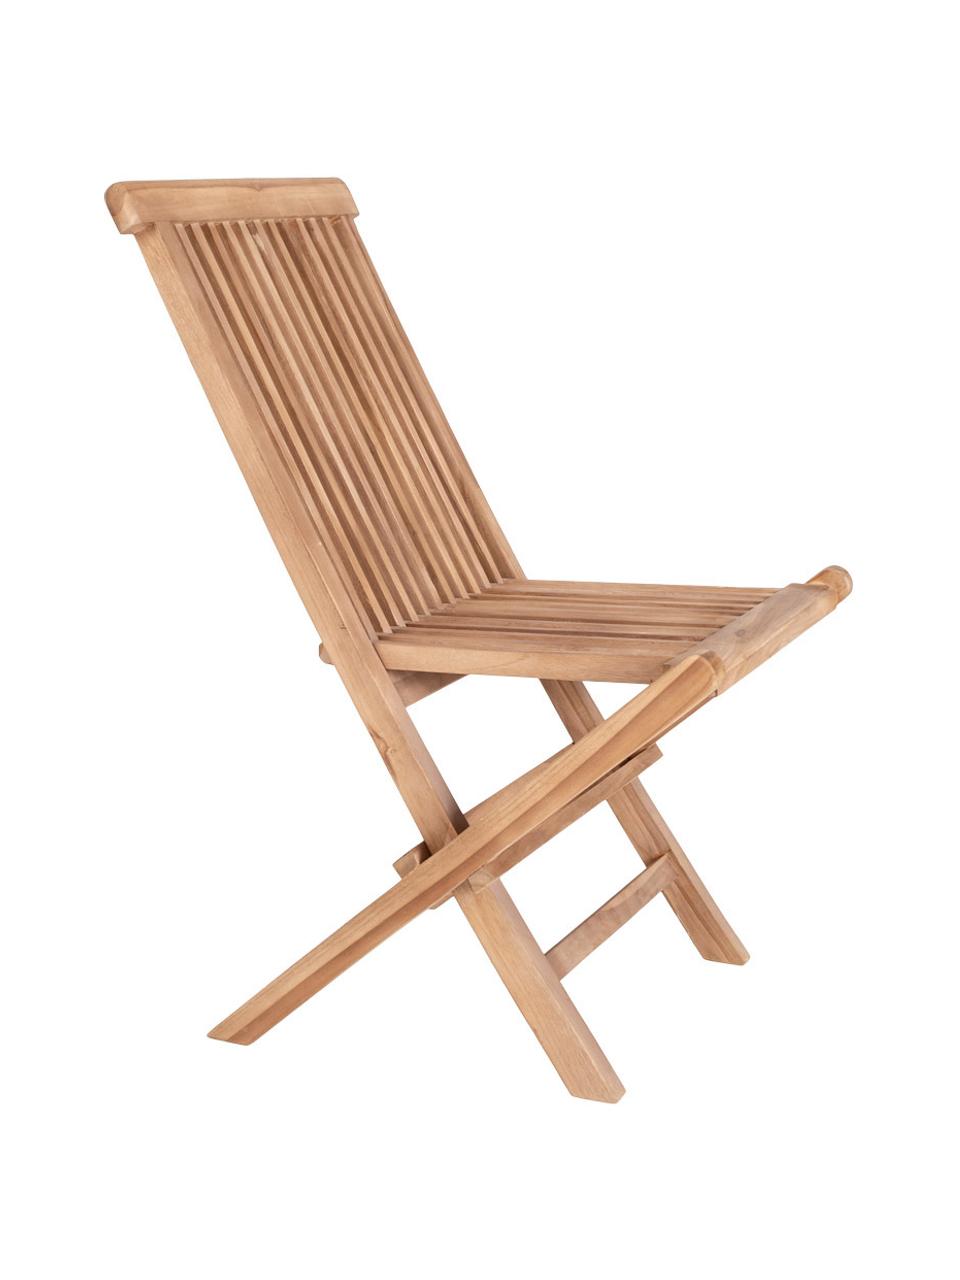 Teaková zahradní židle Toledo, skládací, Teakové dřevo, Světle hnědá, Š 44 cm, H 55 cm